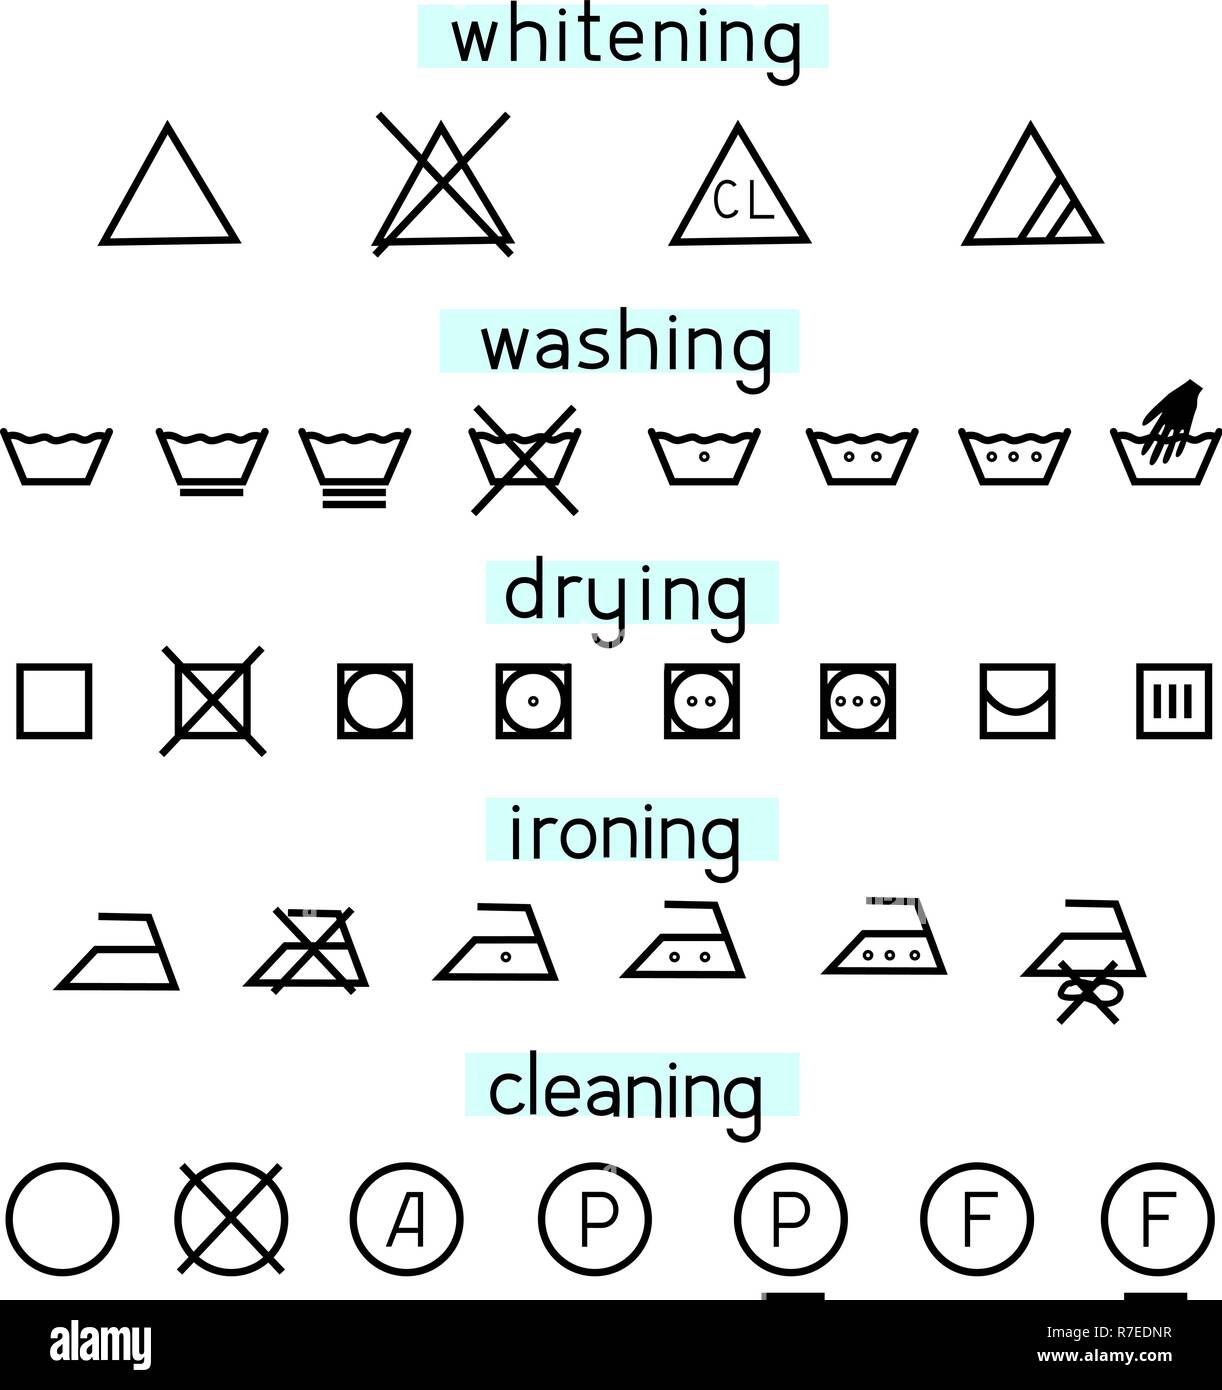 Marcado Vislumbrar Fuente Sencillos iconos para lavado de ropa Imagen Vector de stock - Alamy